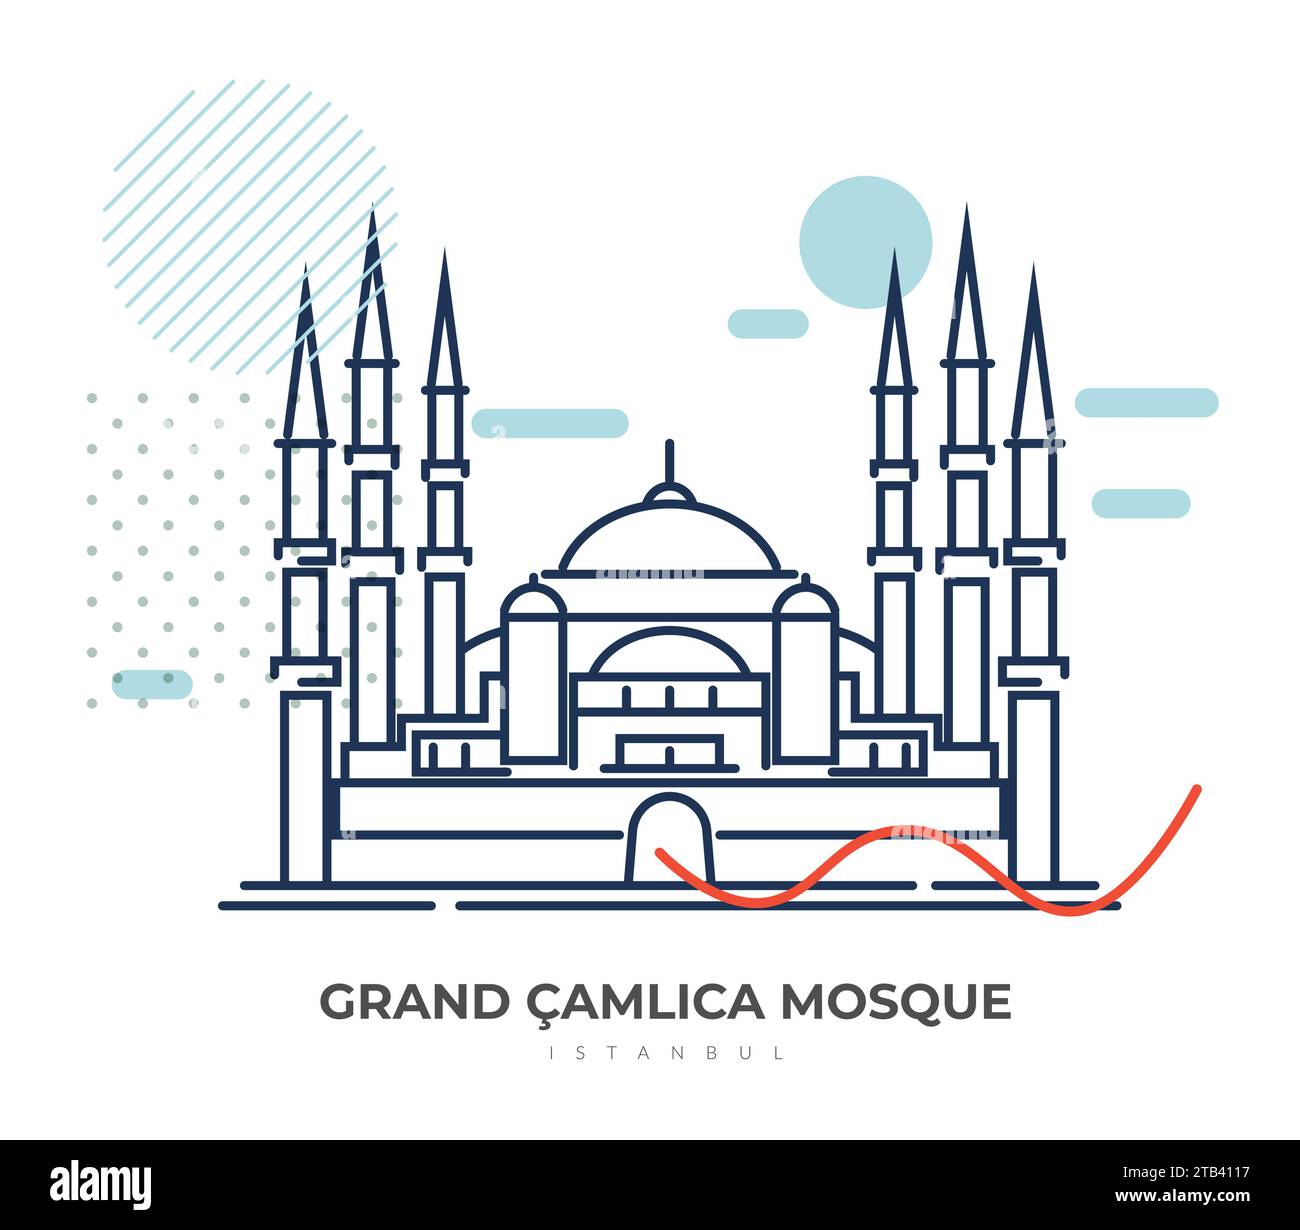 Grande Moschea di Çamlıca - Instanbul, Turchia - Stock Illustration AS EPS 10 file Illustrazione Vettoriale